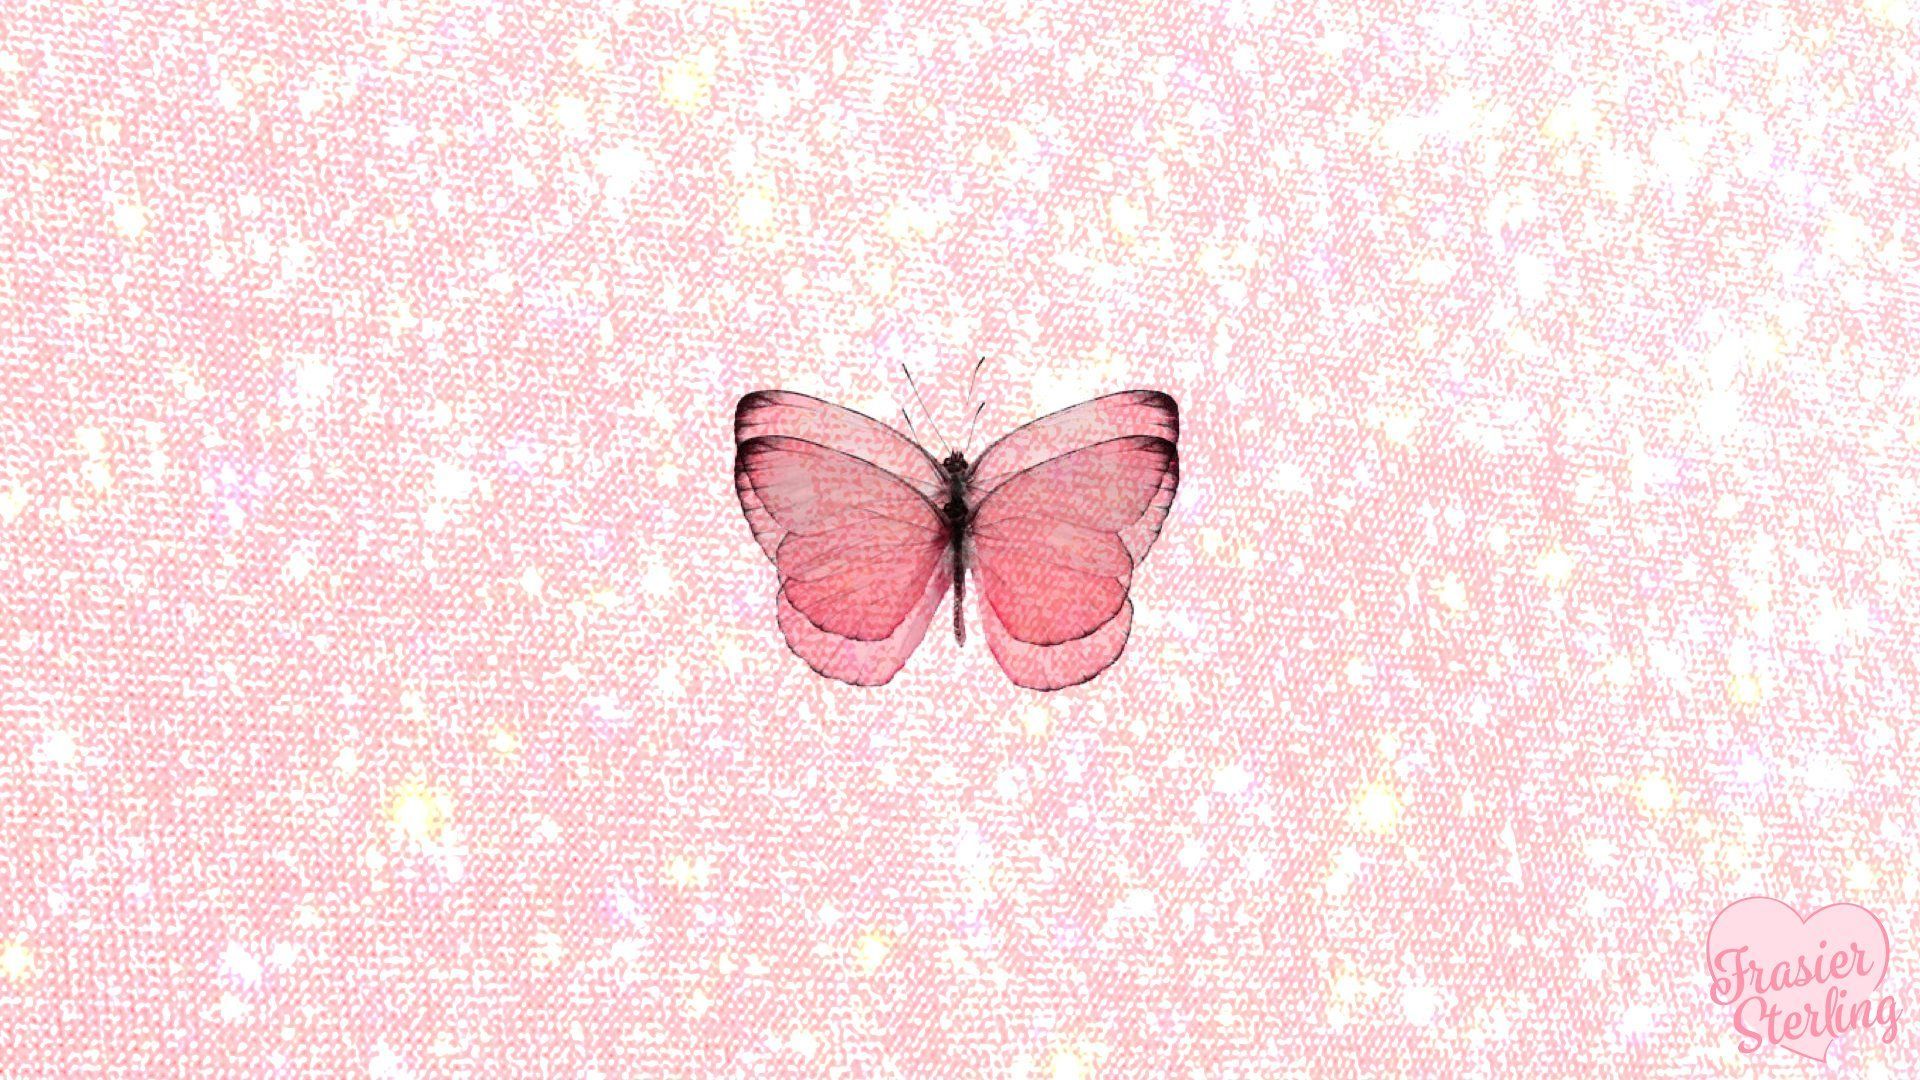 Wallpaper. FrasierSterling. Cute laptop wallpaper, Butterfly